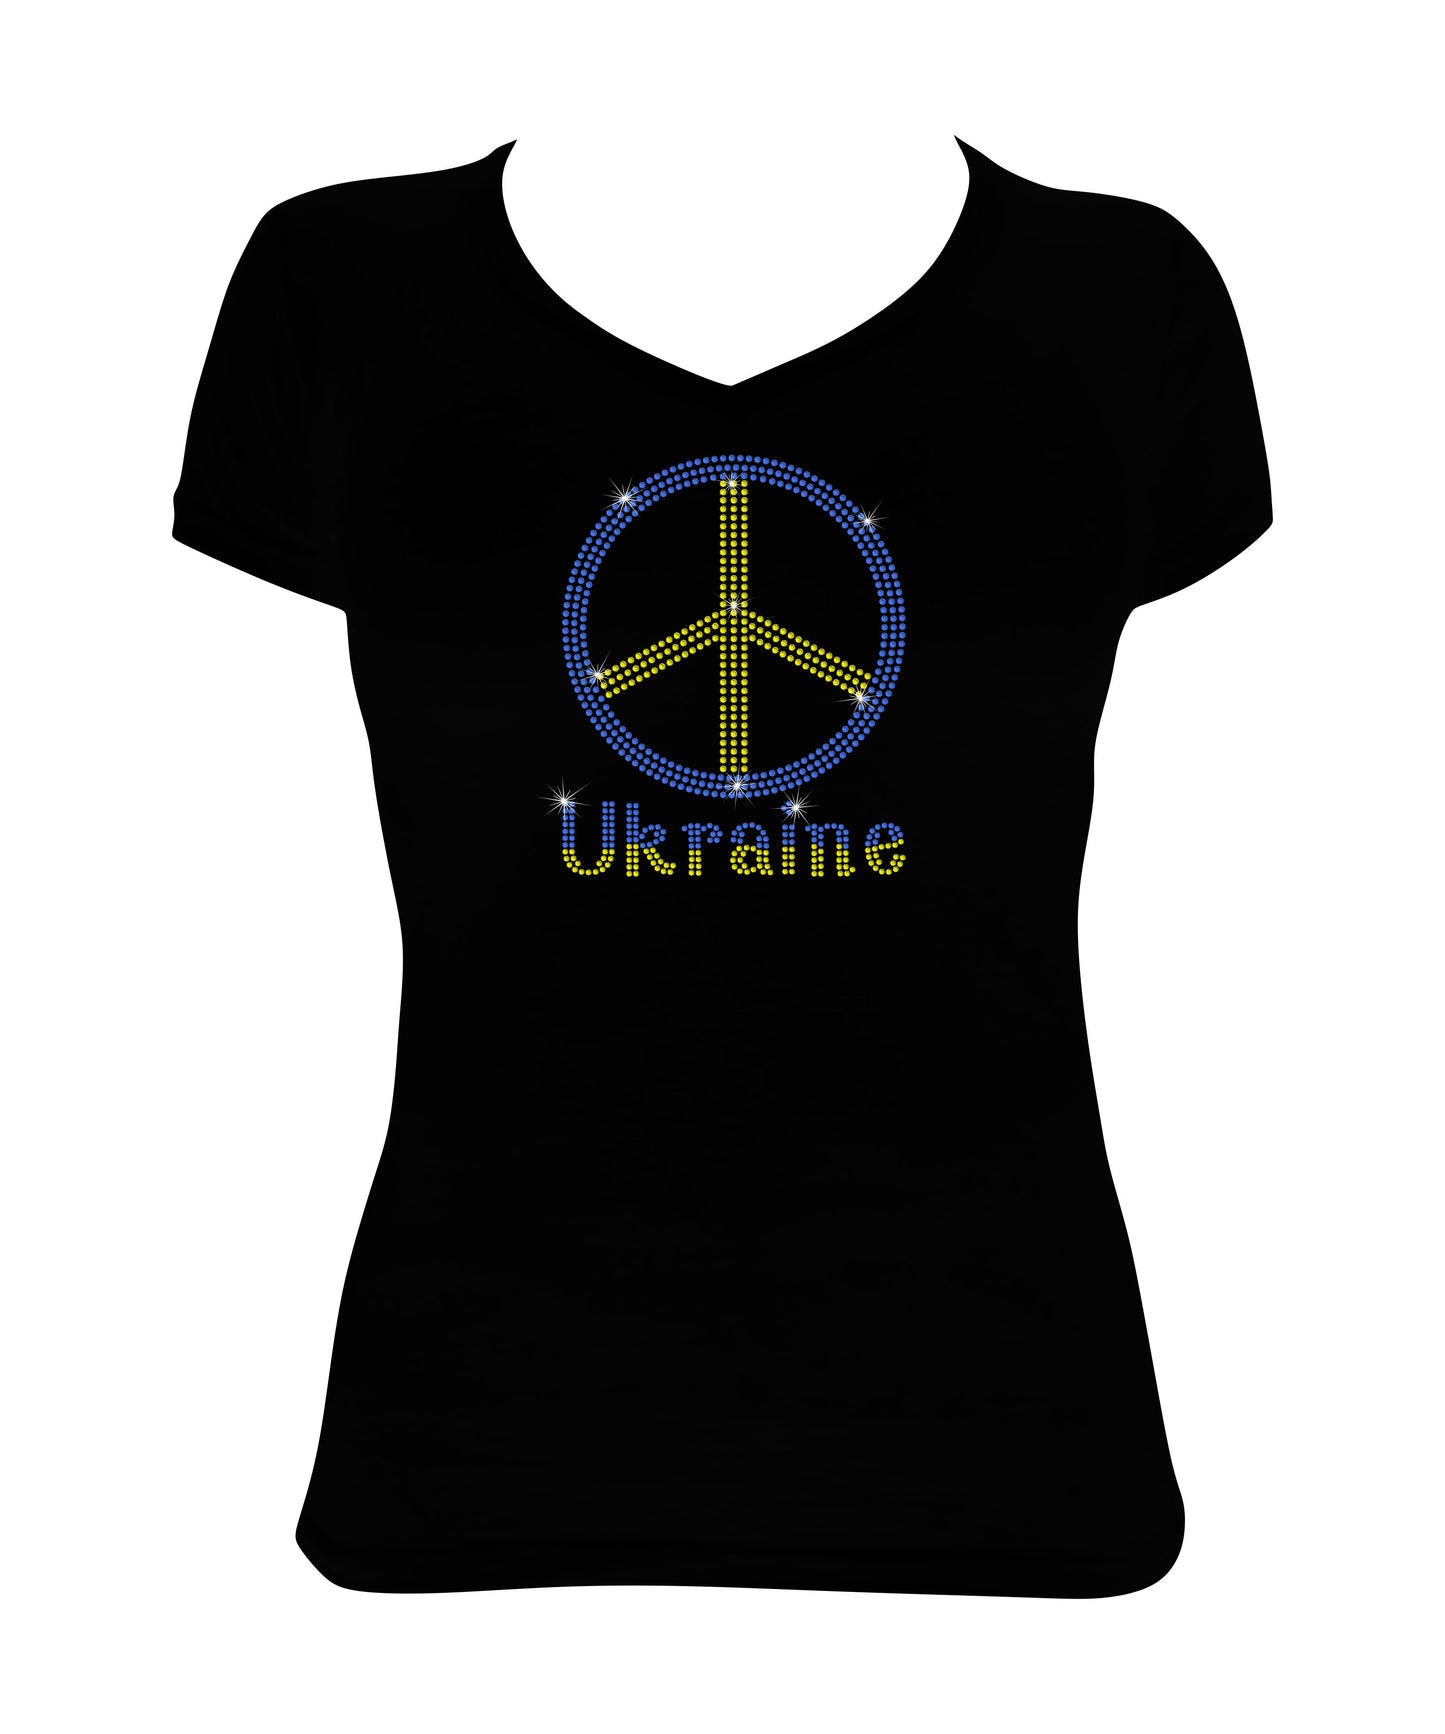 Peace in Ukraine - Ukrainian Colors Peace Sign, Support for Ukraine